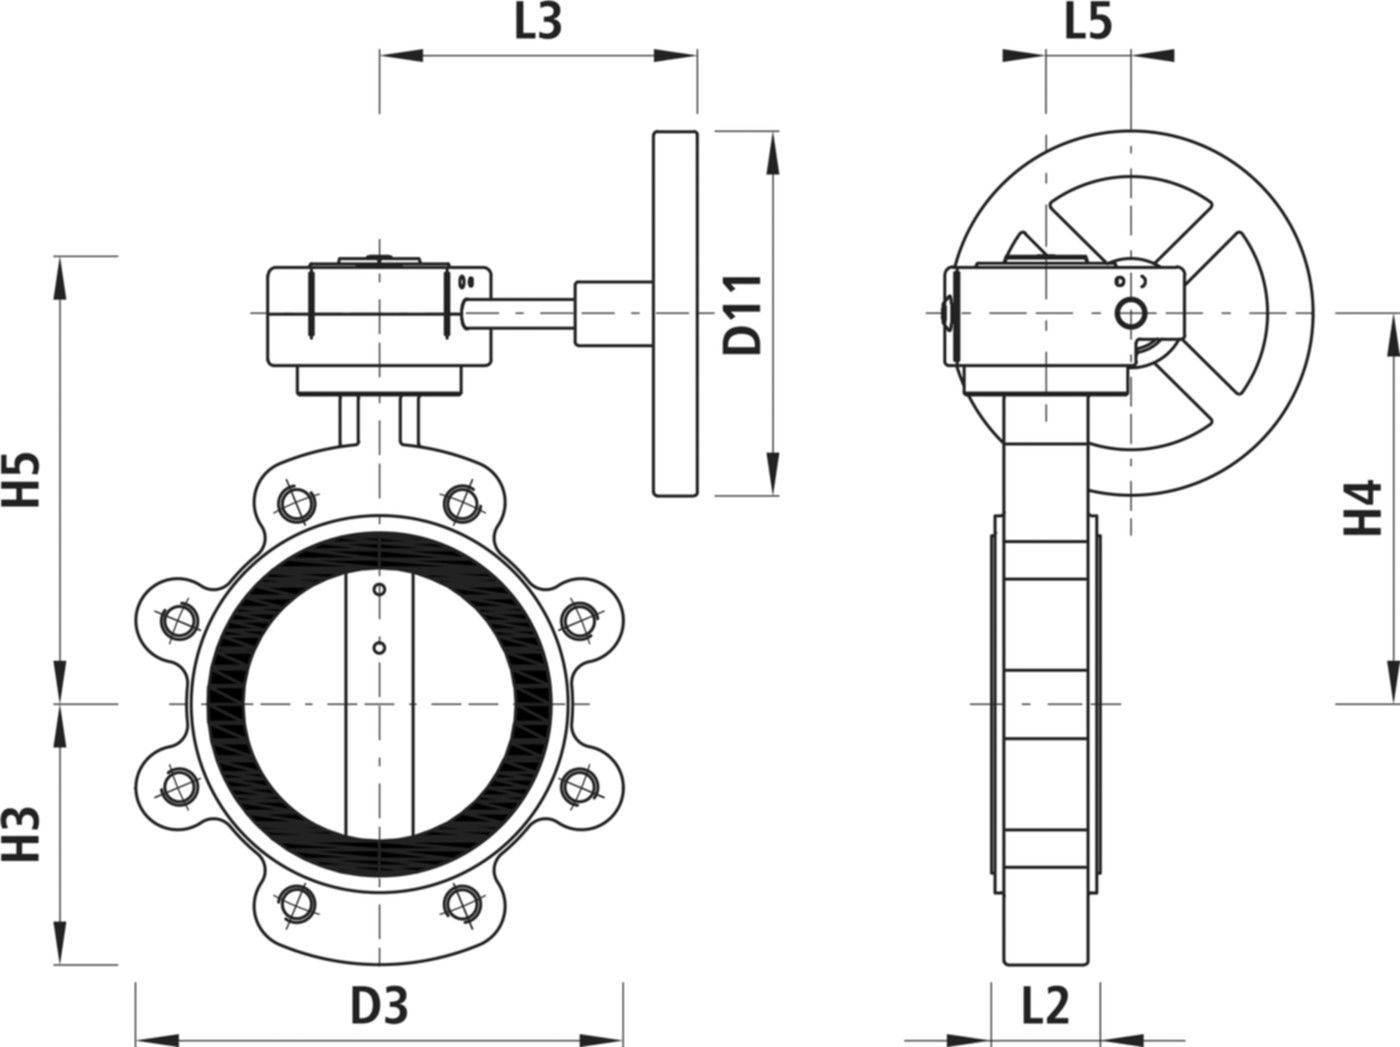 Absperrklappe mit Getriebe Typ LI 9943 DN 250 PN 10 - Hawle Absperrklappen